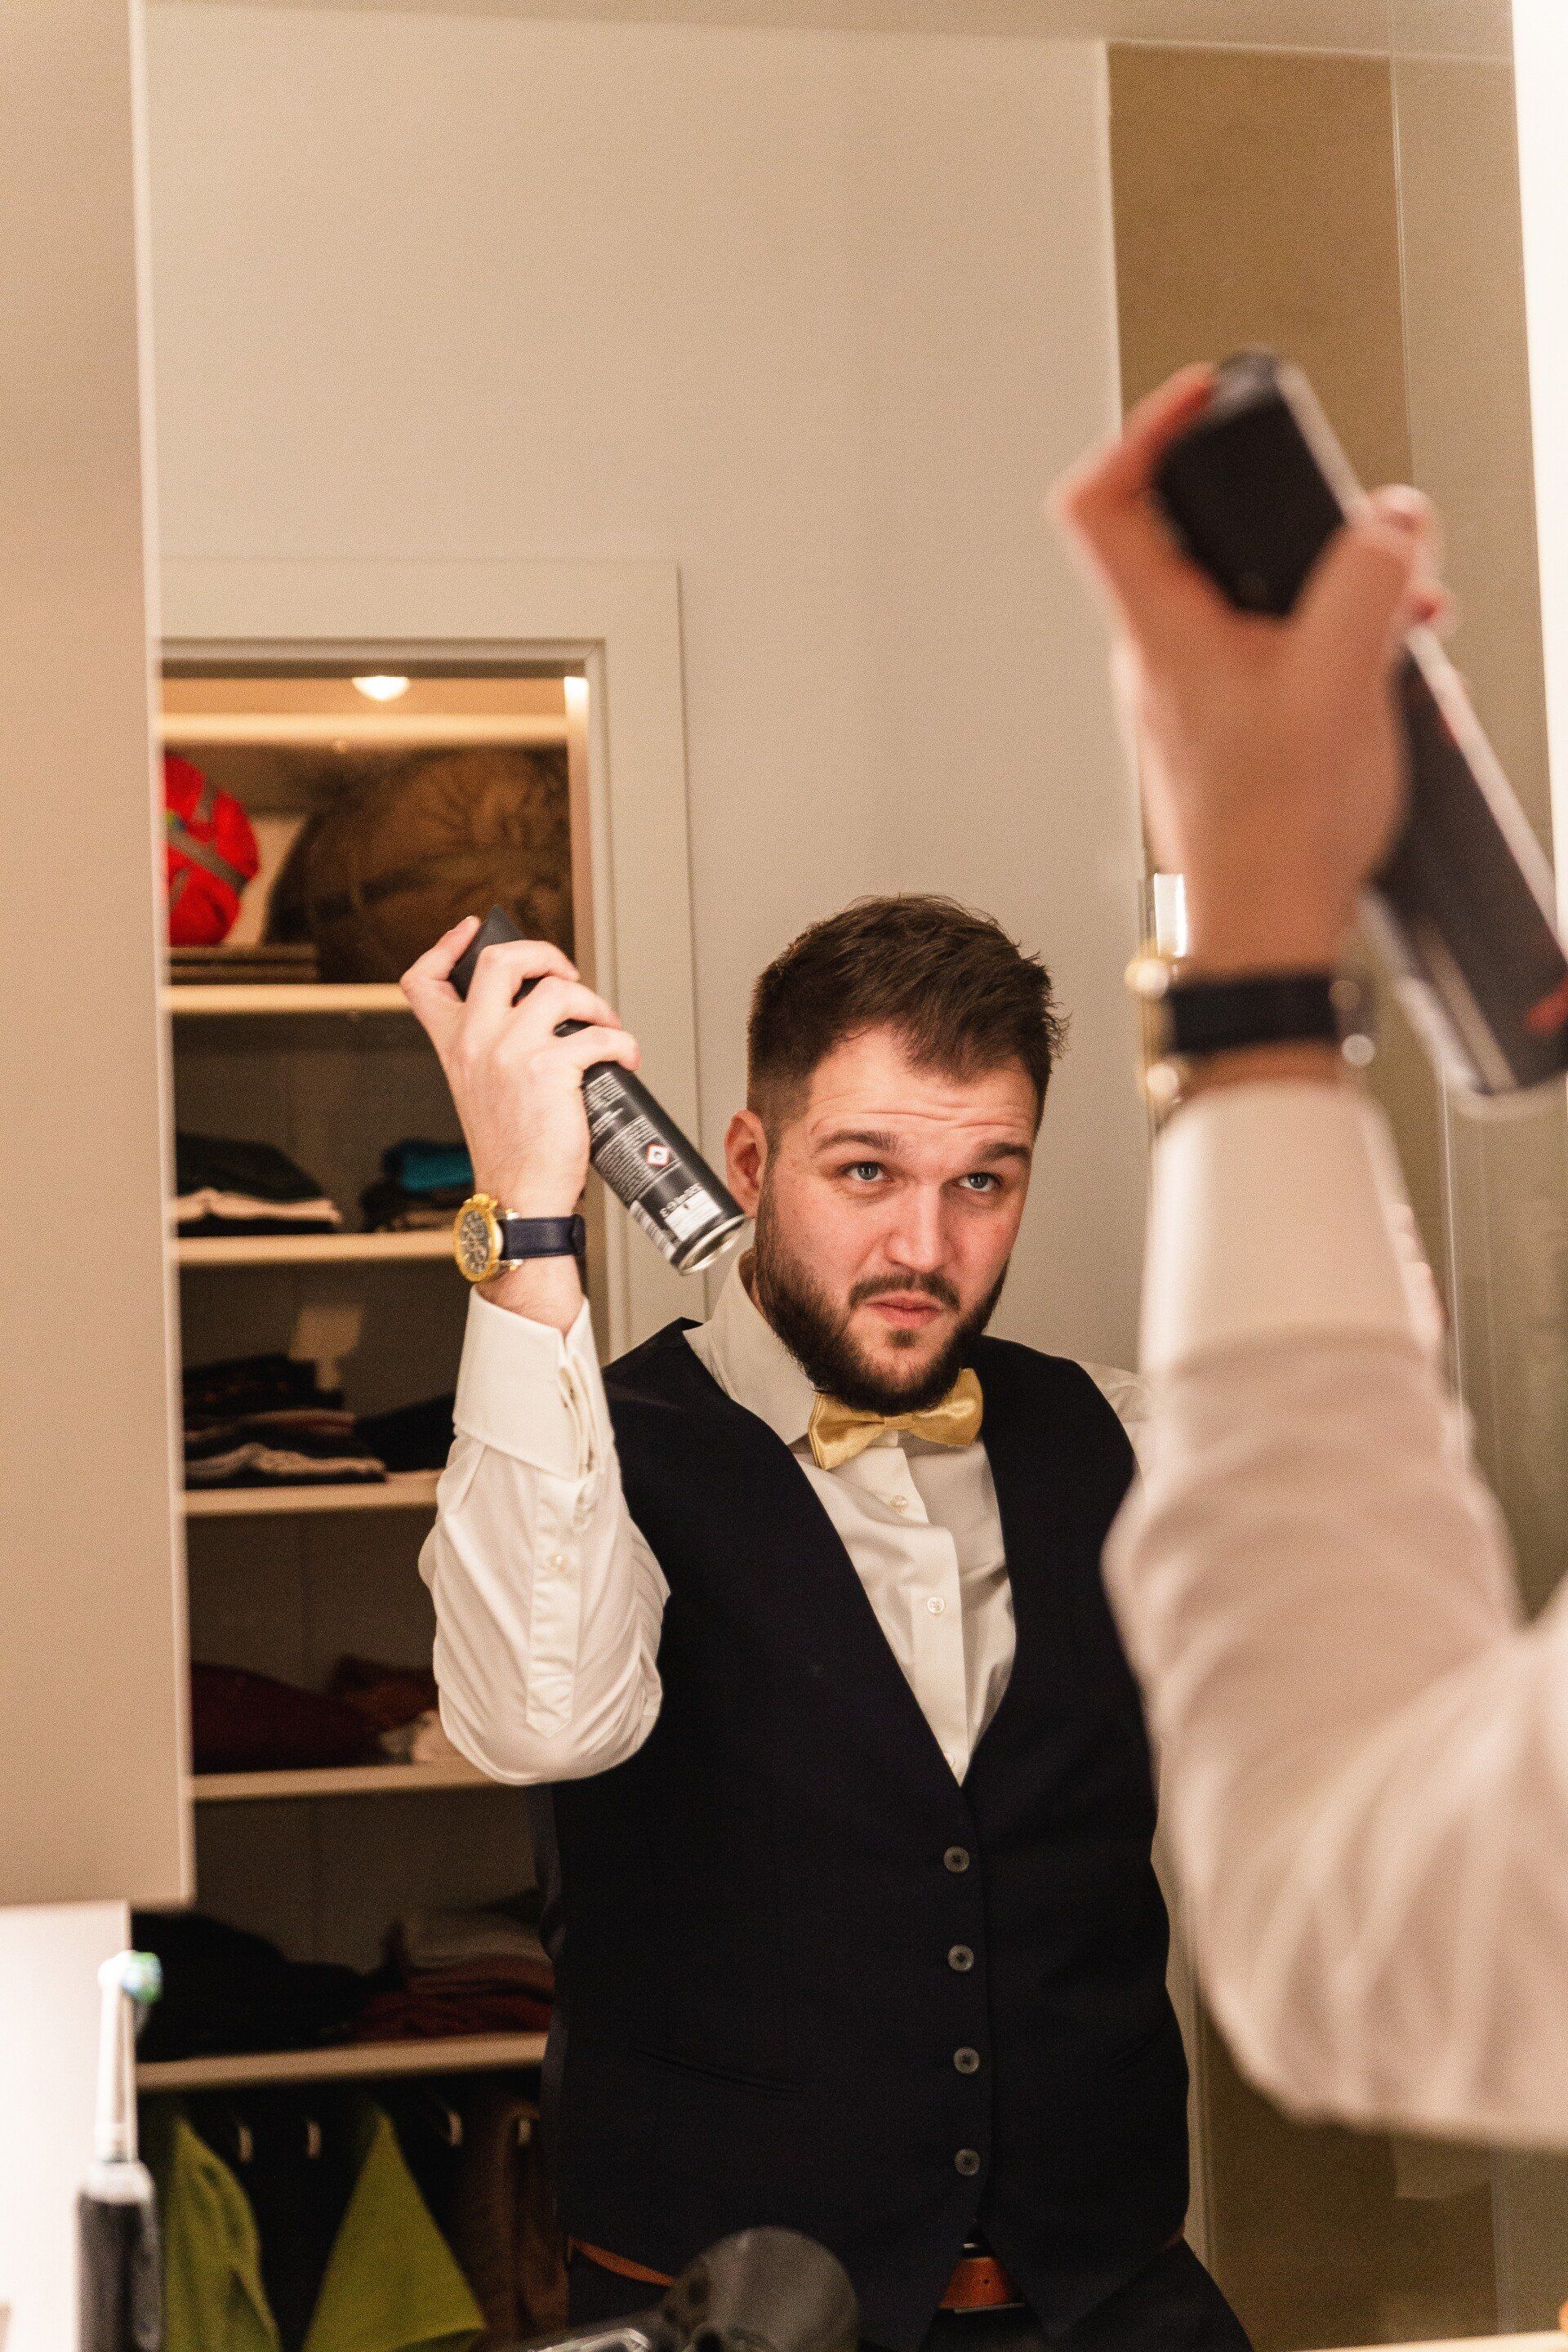 Auf dem Bild fixiert der Bräutigam seine Frisur mit Haarspray